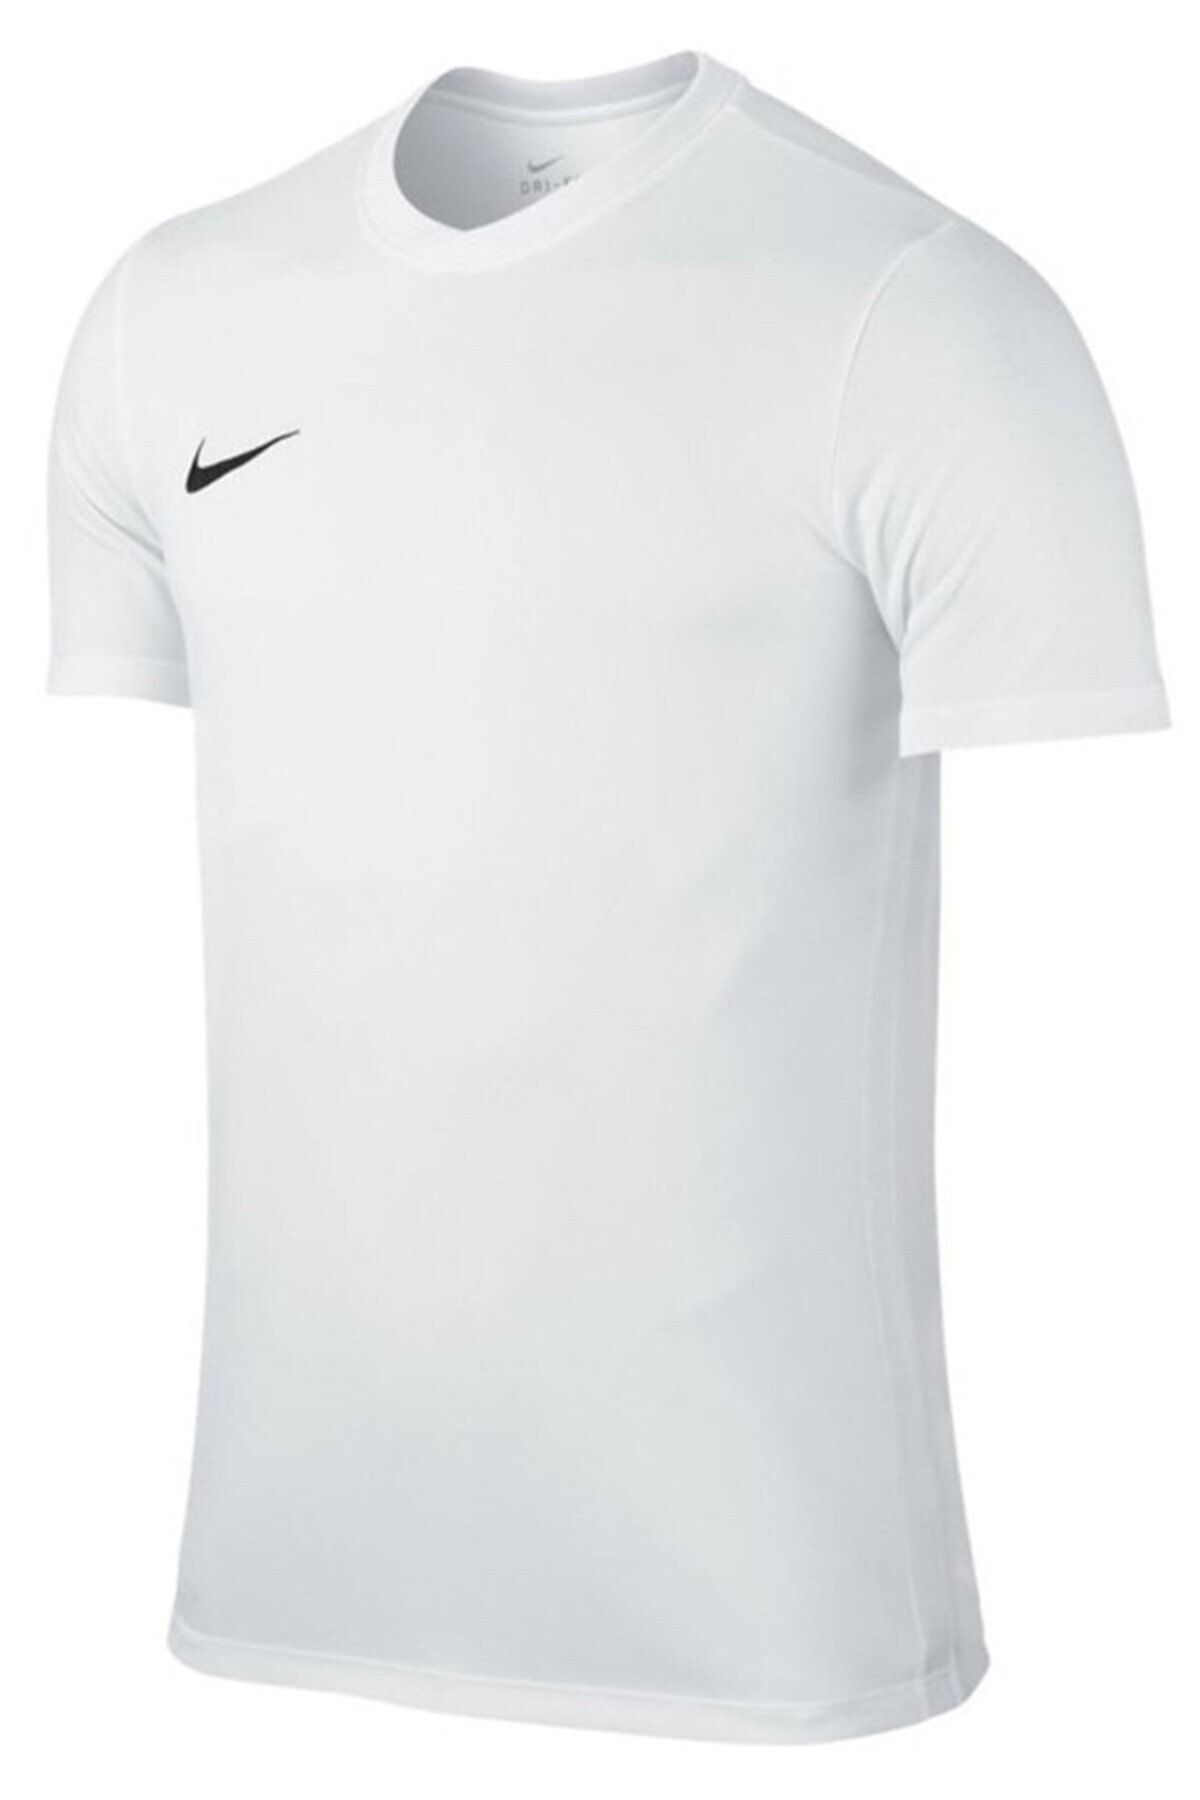 Nike Erkek T-shirt Ss Park Vi Jsy 725891-100